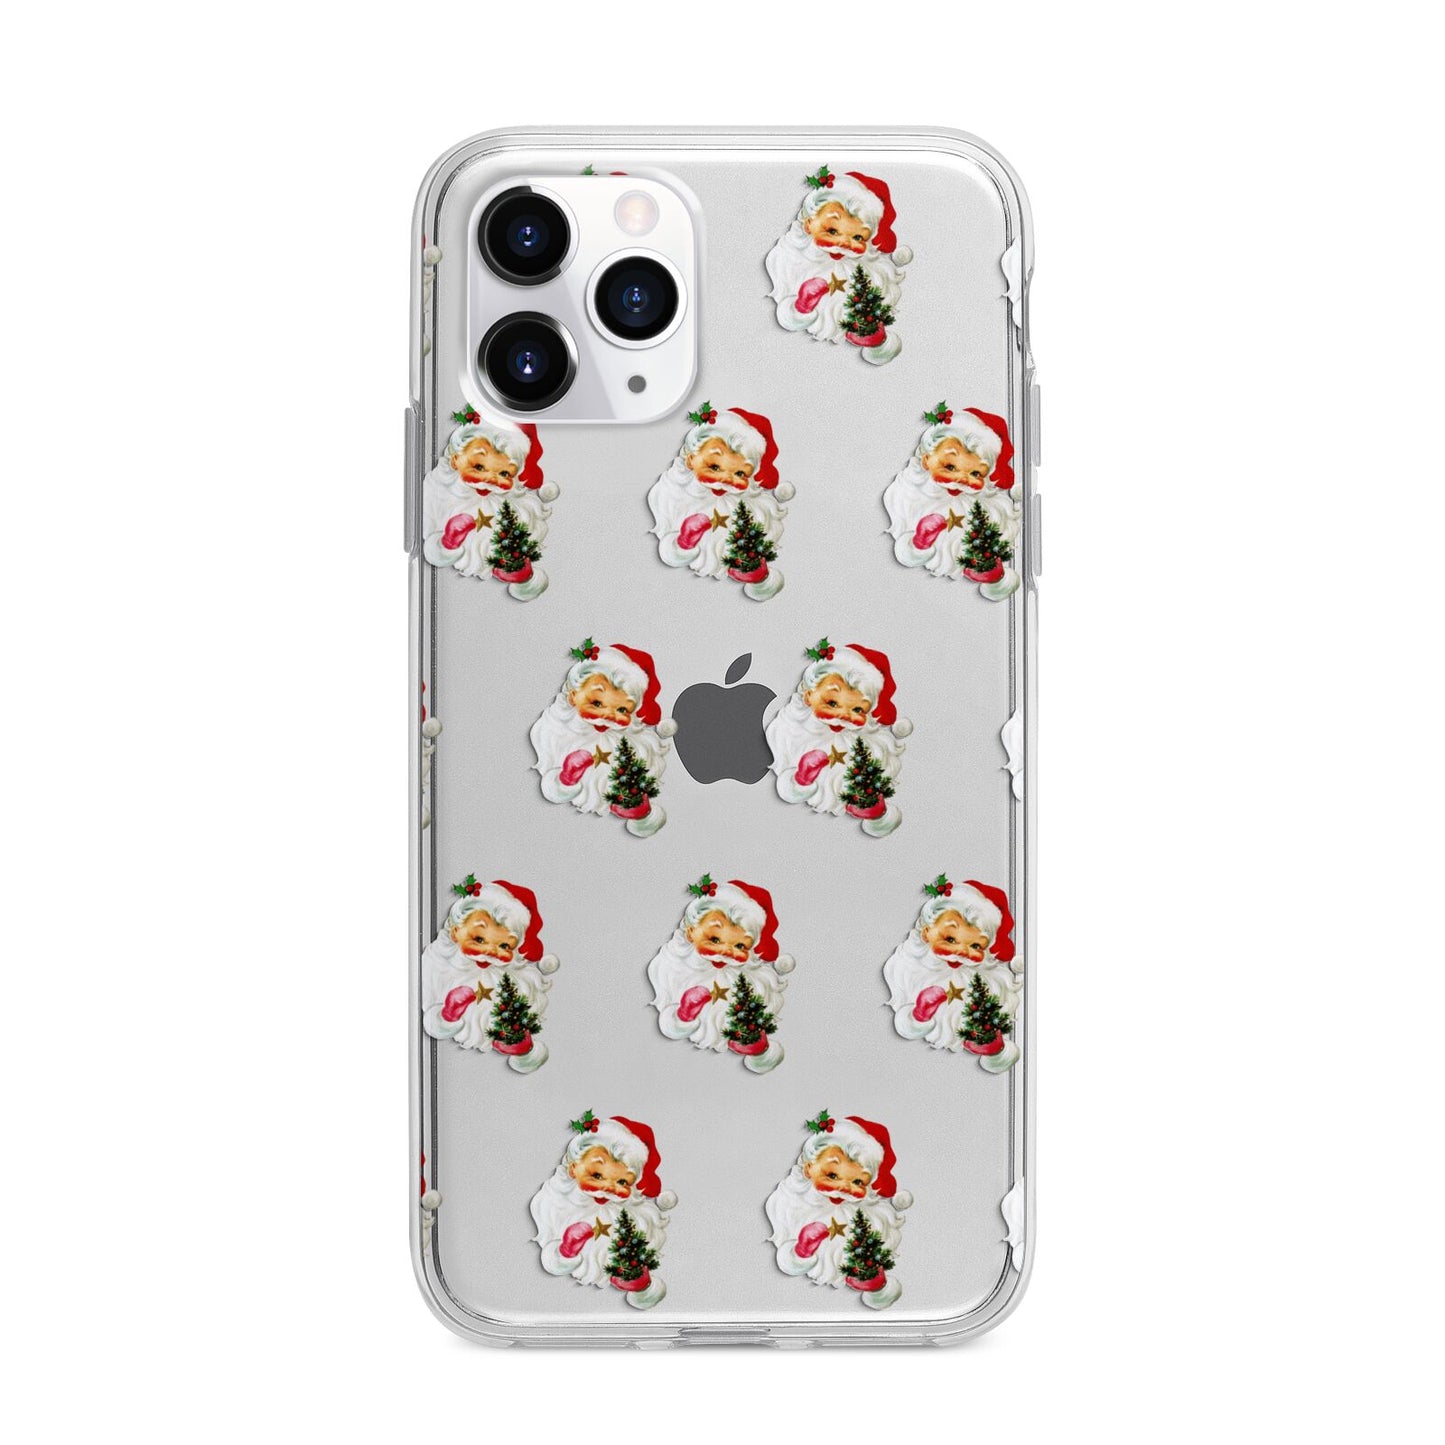 Retro Santa Face Apple iPhone 11 Pro Max in Silver with Bumper Case